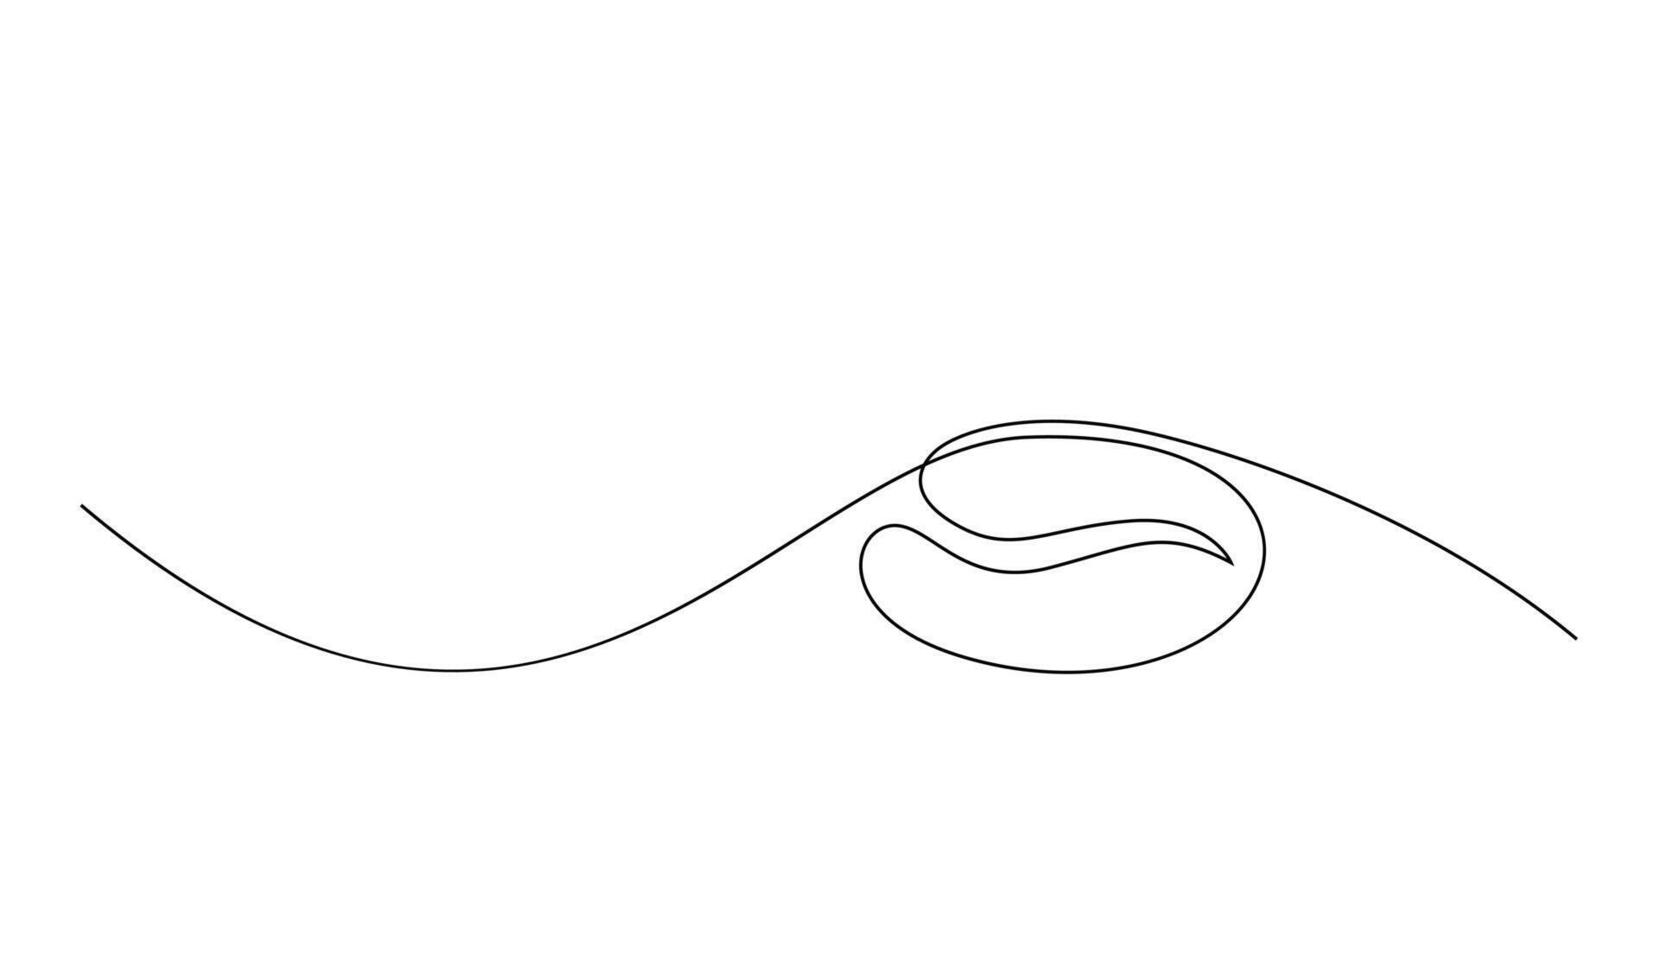 linéaire café grain Contexte. un continu ligne dessin de une café haricot vecteur